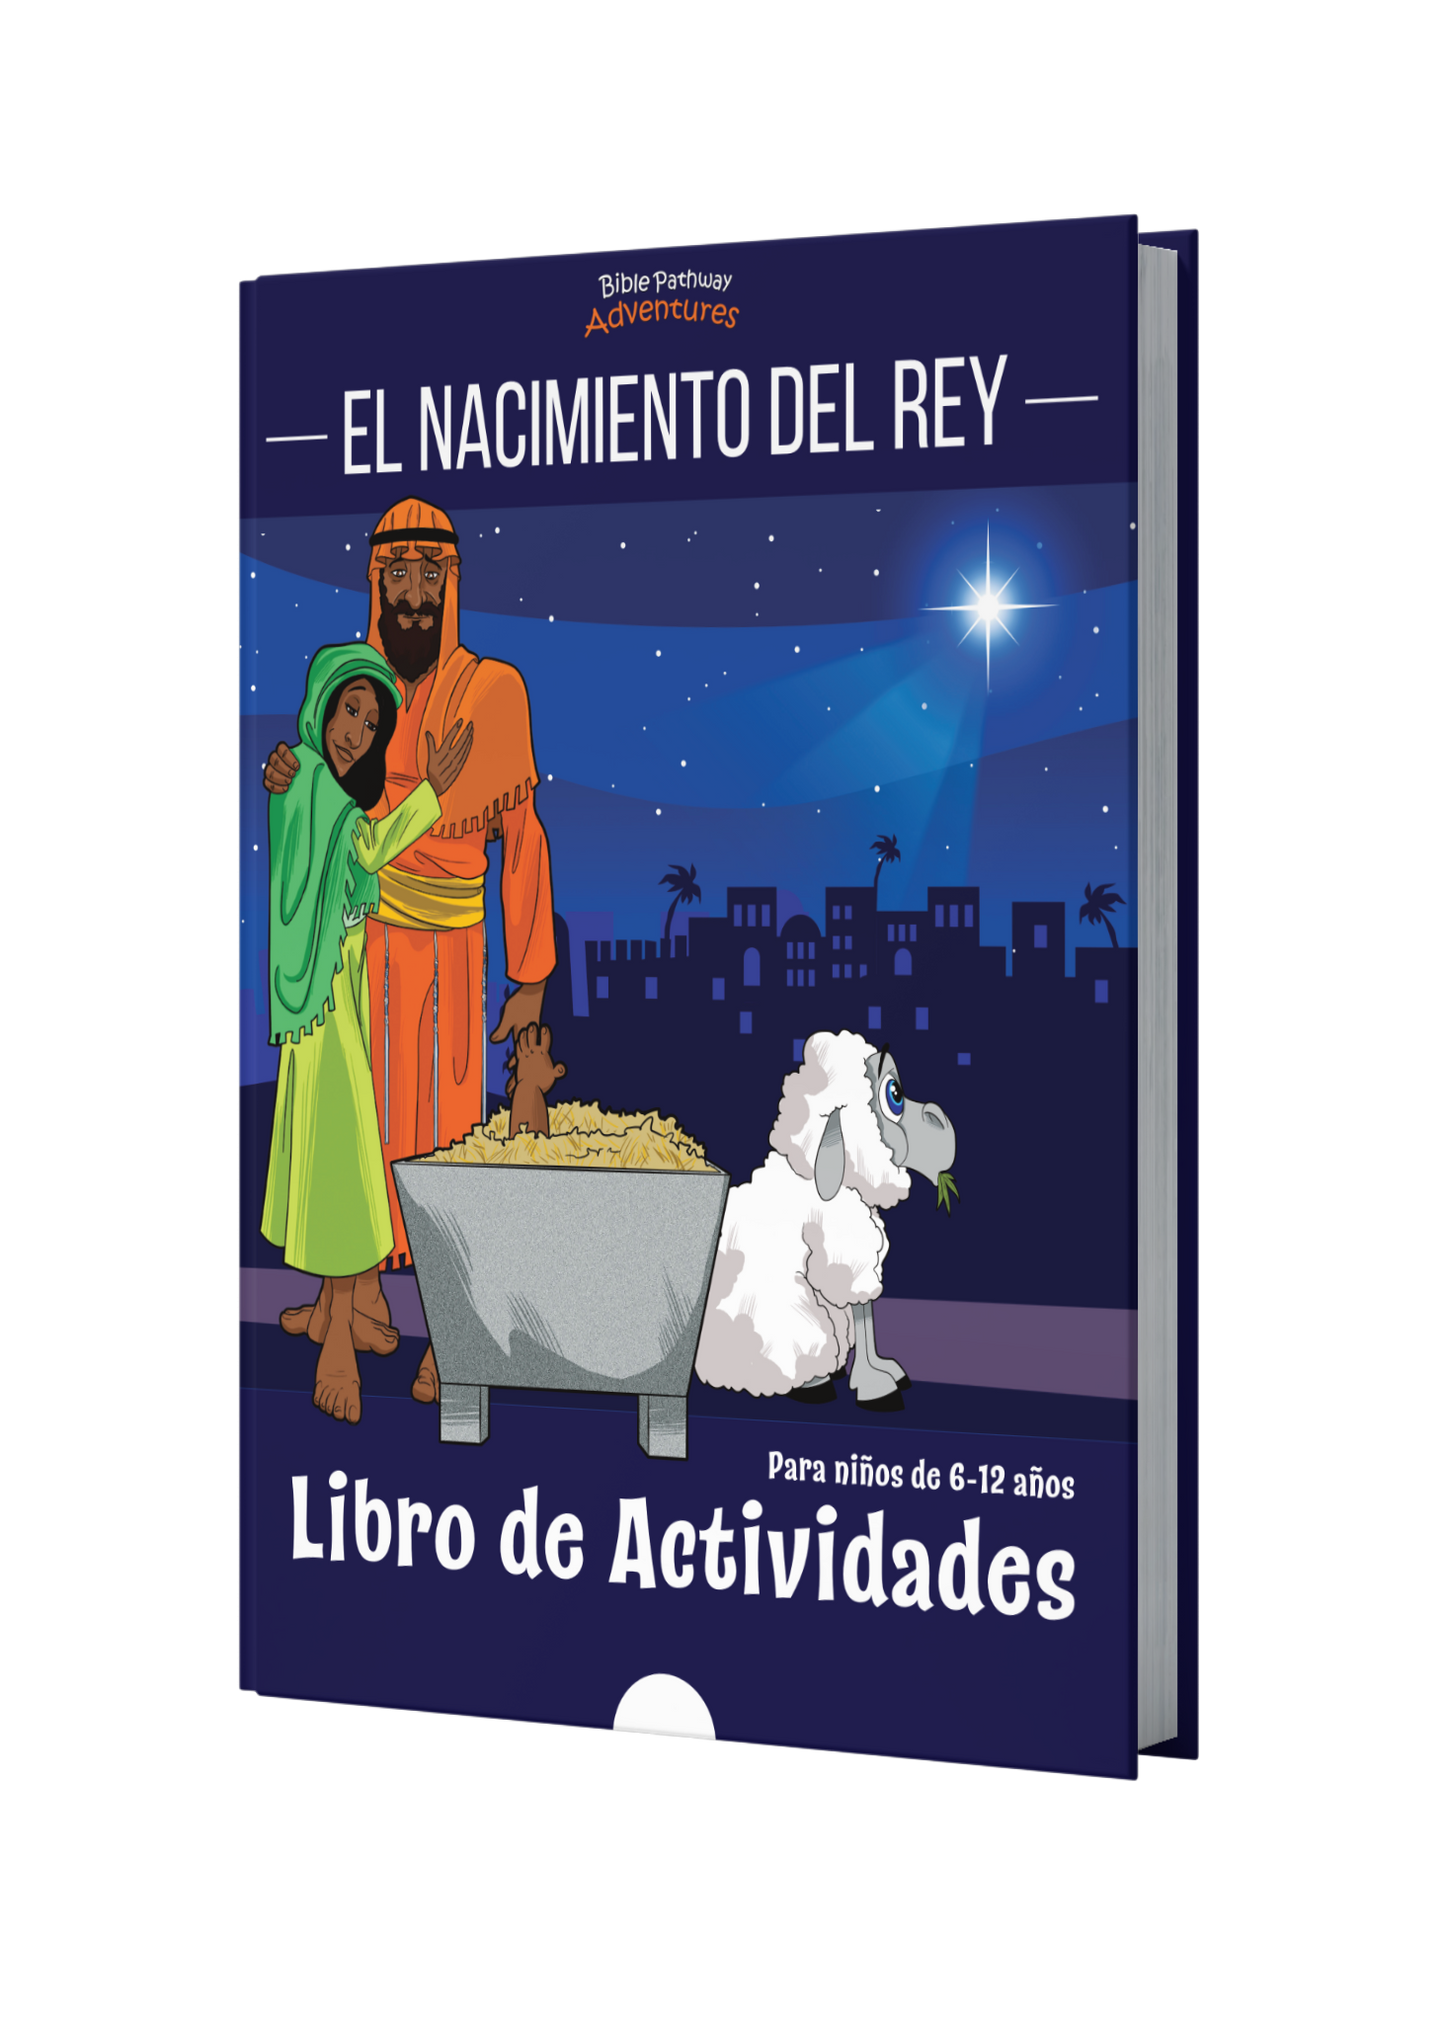 El nacimiento del Rey: Libro de actividades book cover